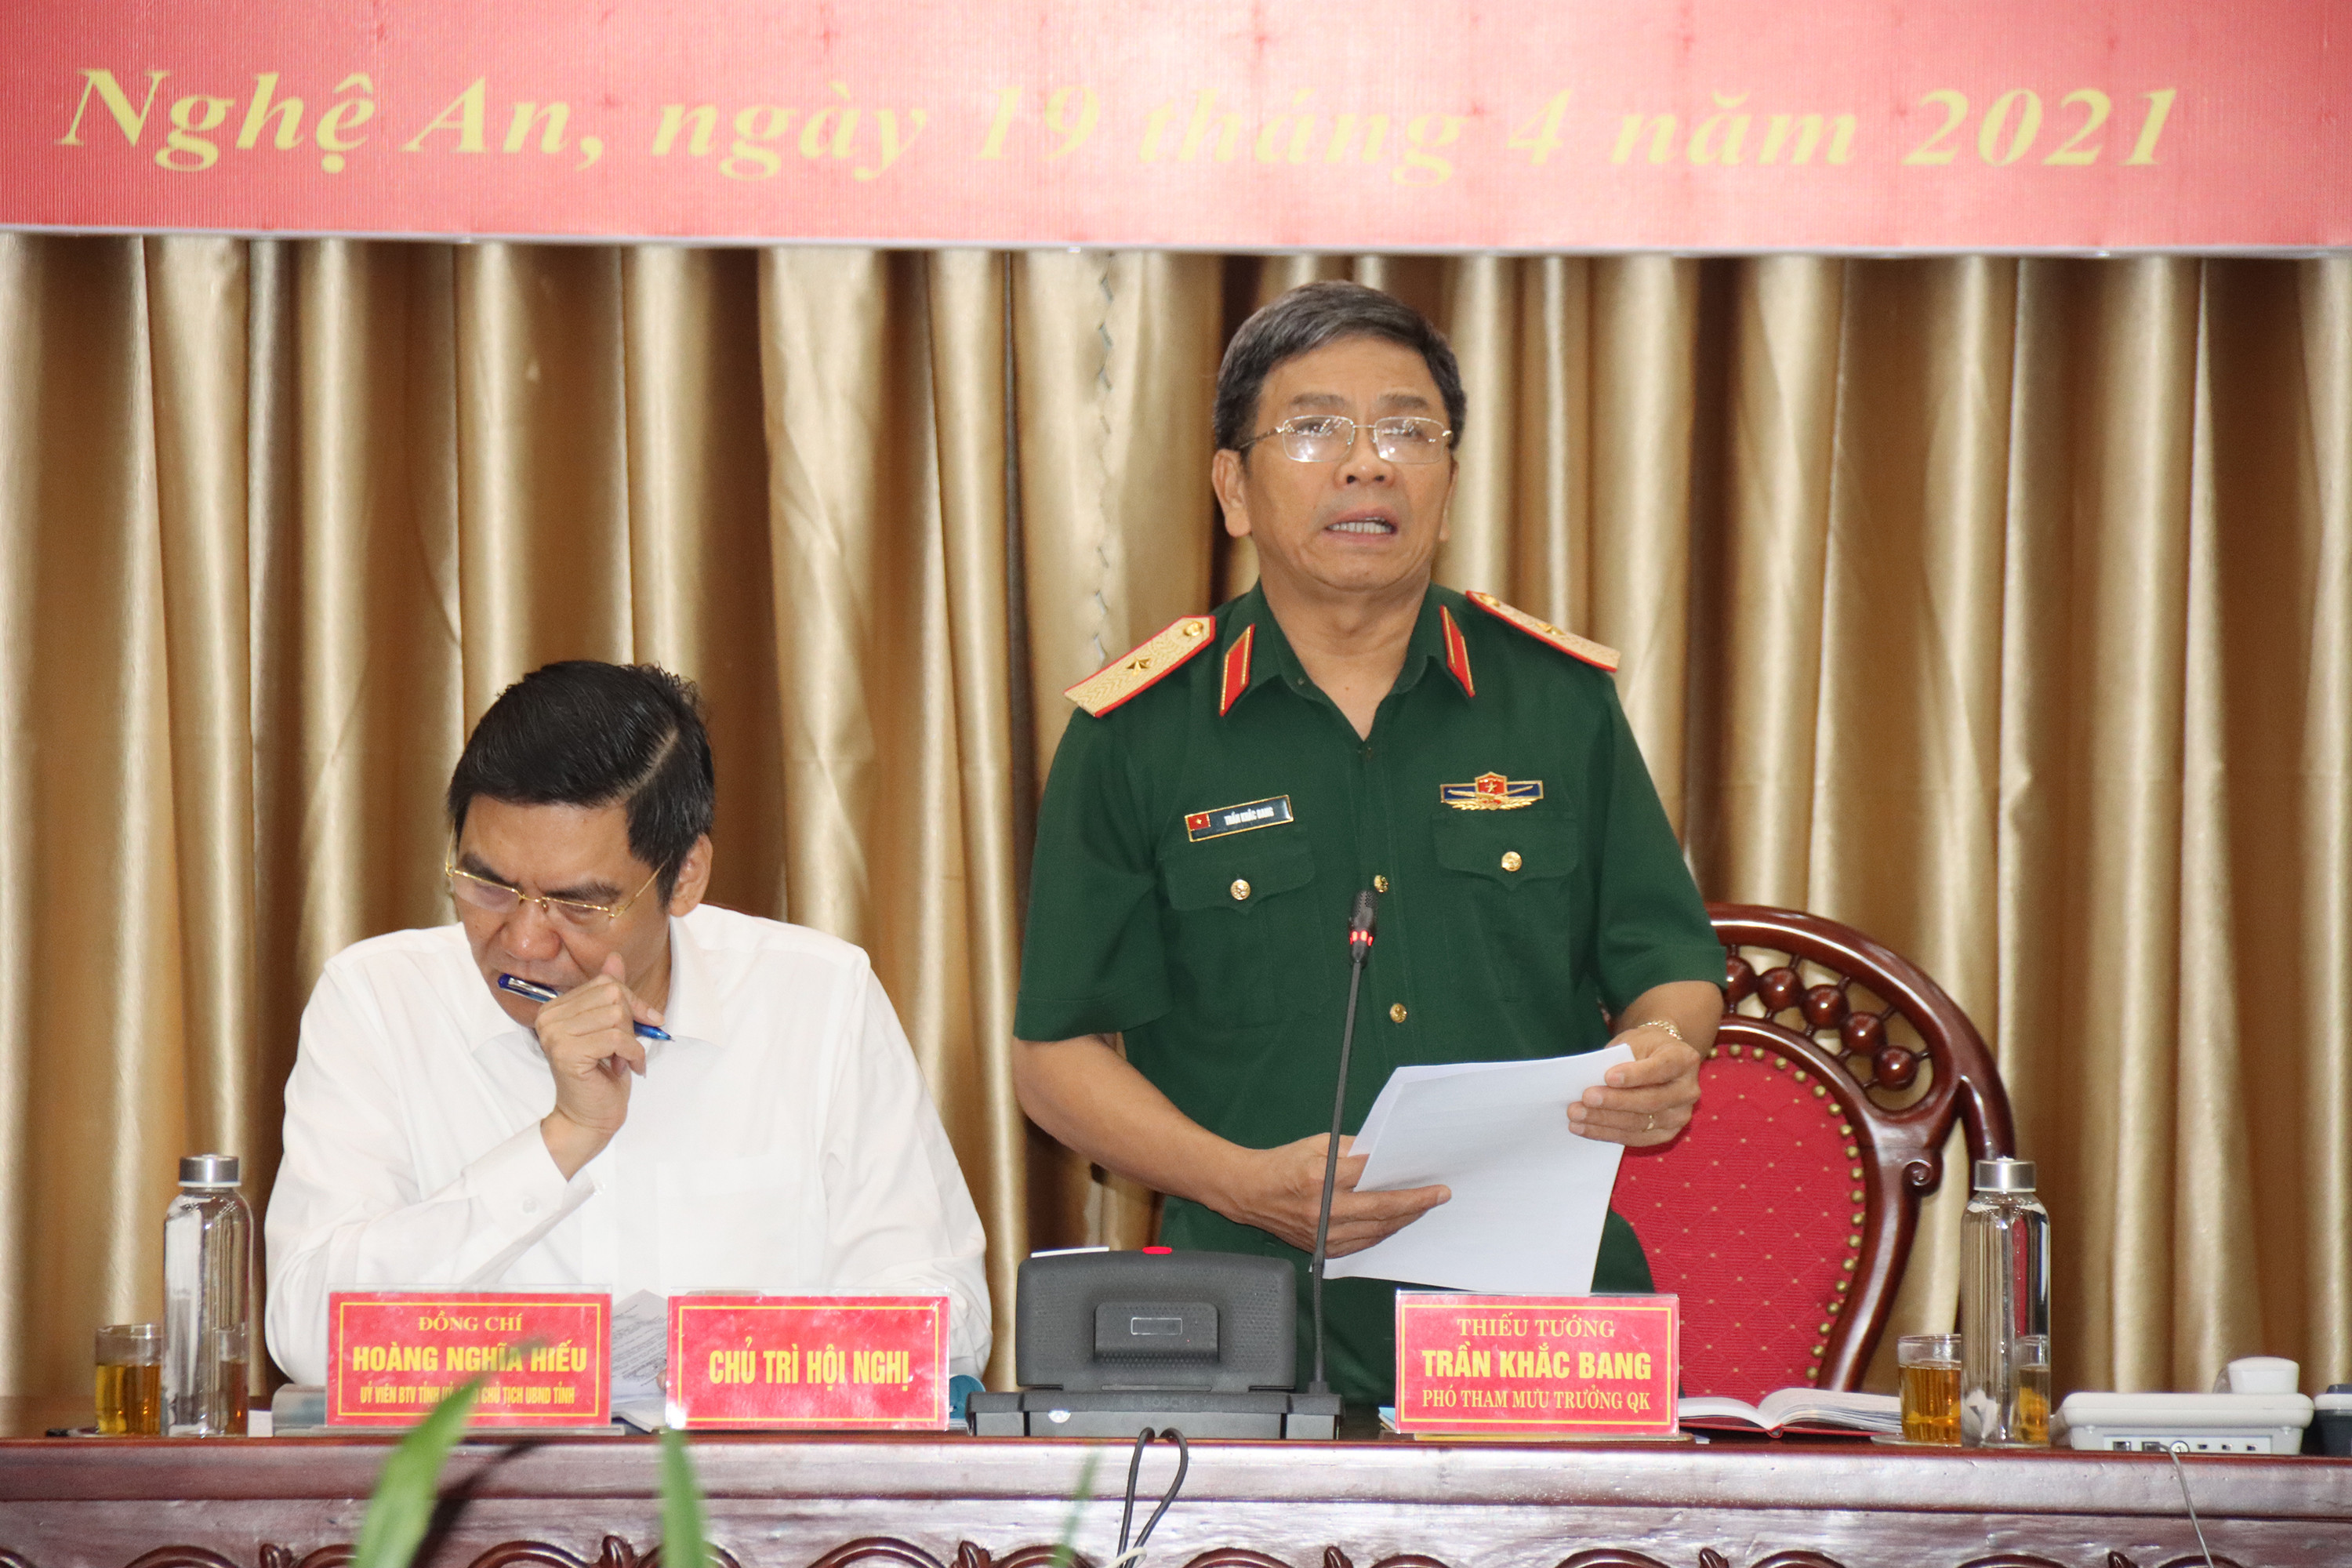 Thiếu tướng Trần Khắc Bang, Phó Tham mưu trưởng Bộ Tư lệnh Quân khu 4 phát biểu kết luận hội nghị